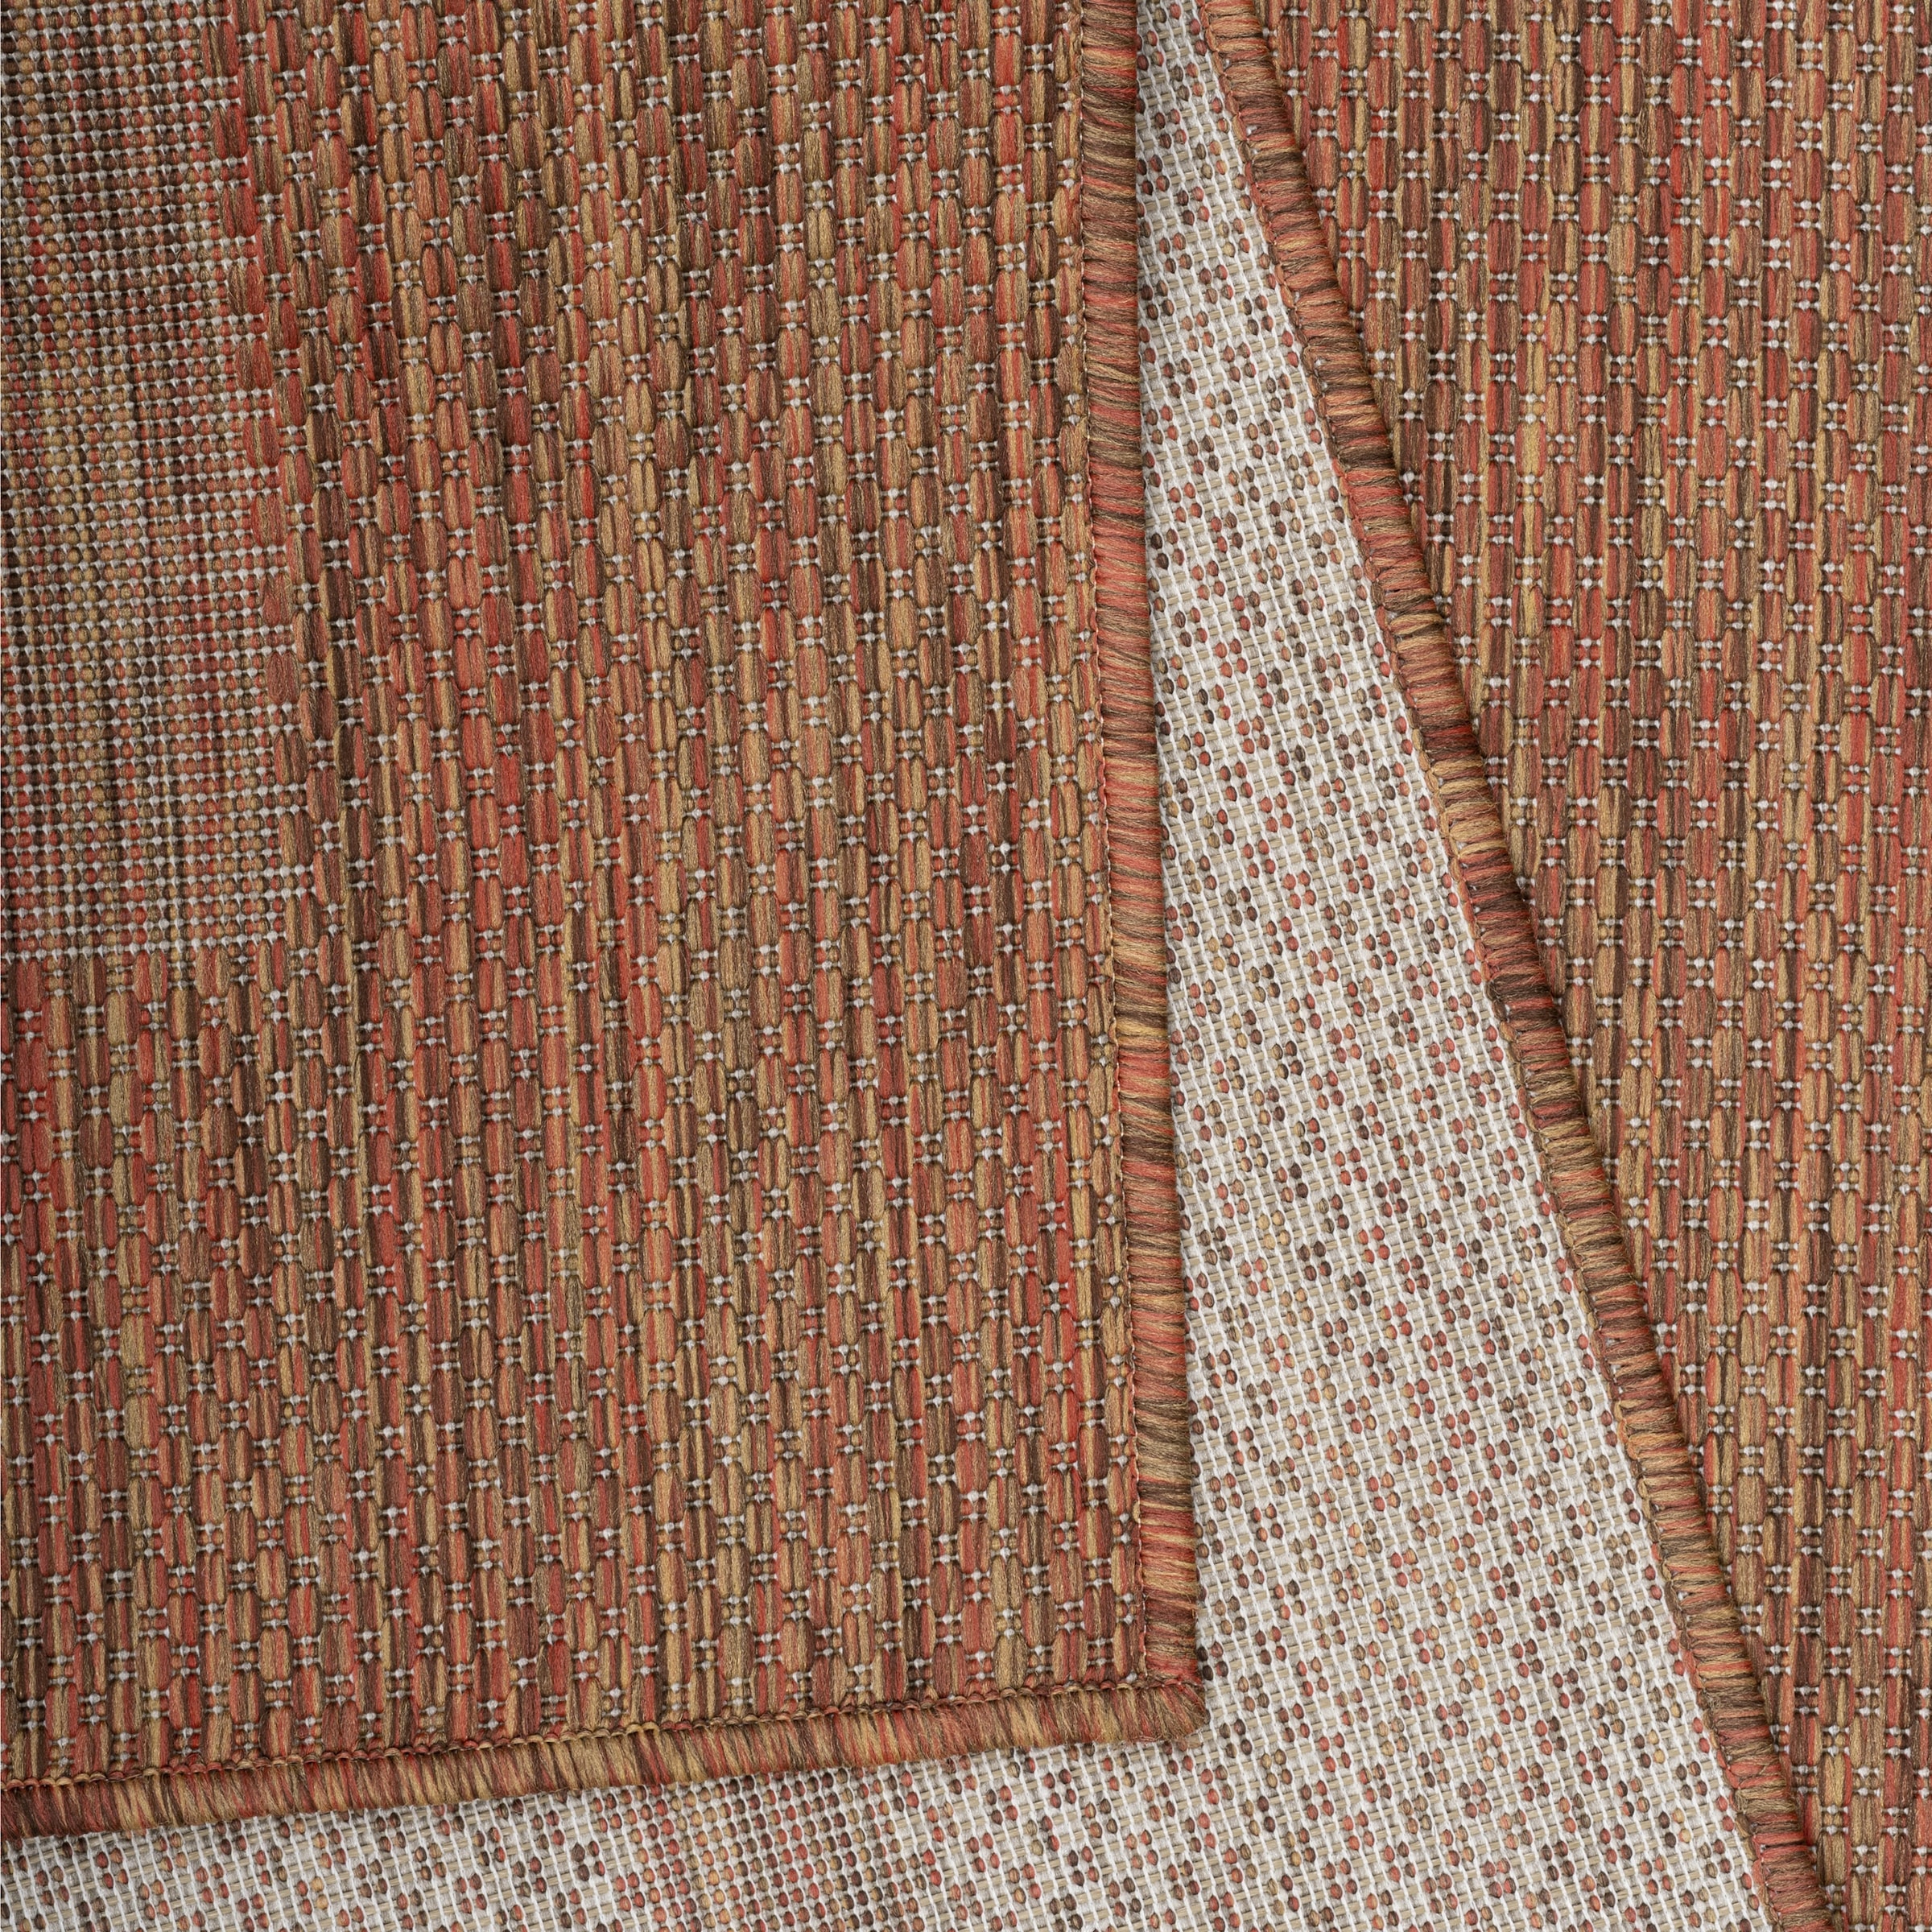 Ayyildiz Teppiche Outdoorteppich »RELAX 4311«, rechteckig, Pflegeleicht / Strapazierfähig / In- und Outdoor geeignet